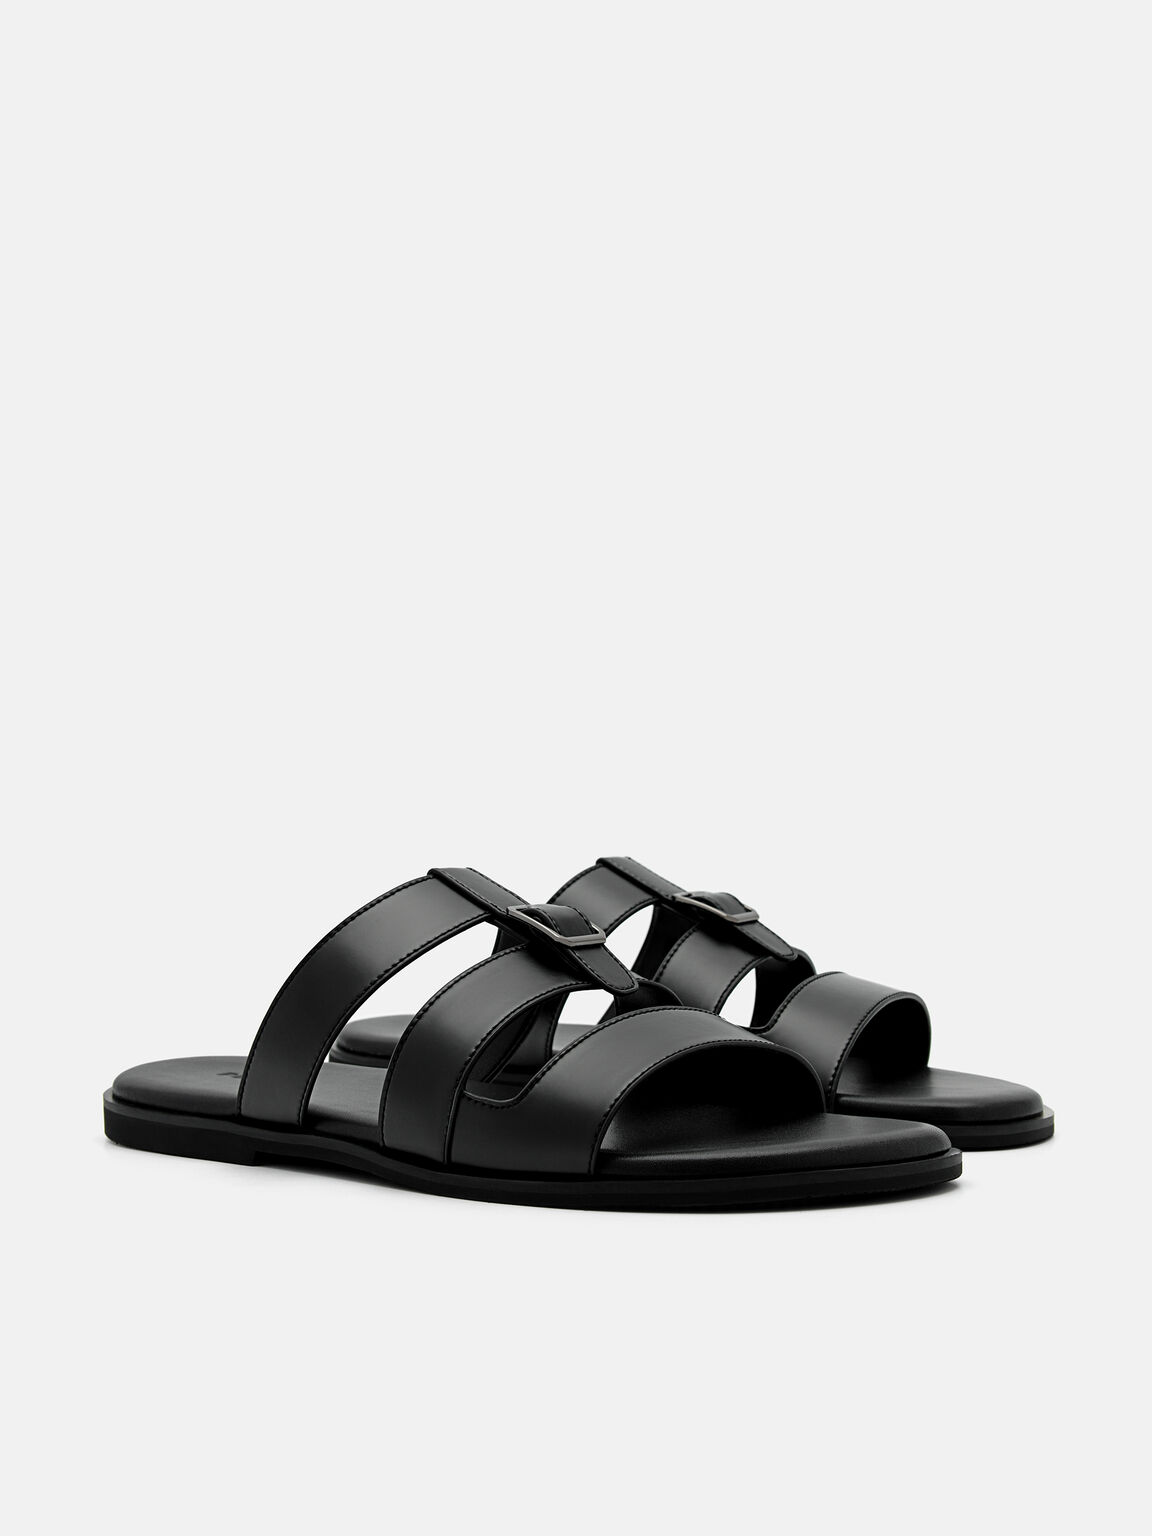 Caged Slide Sandals, Black